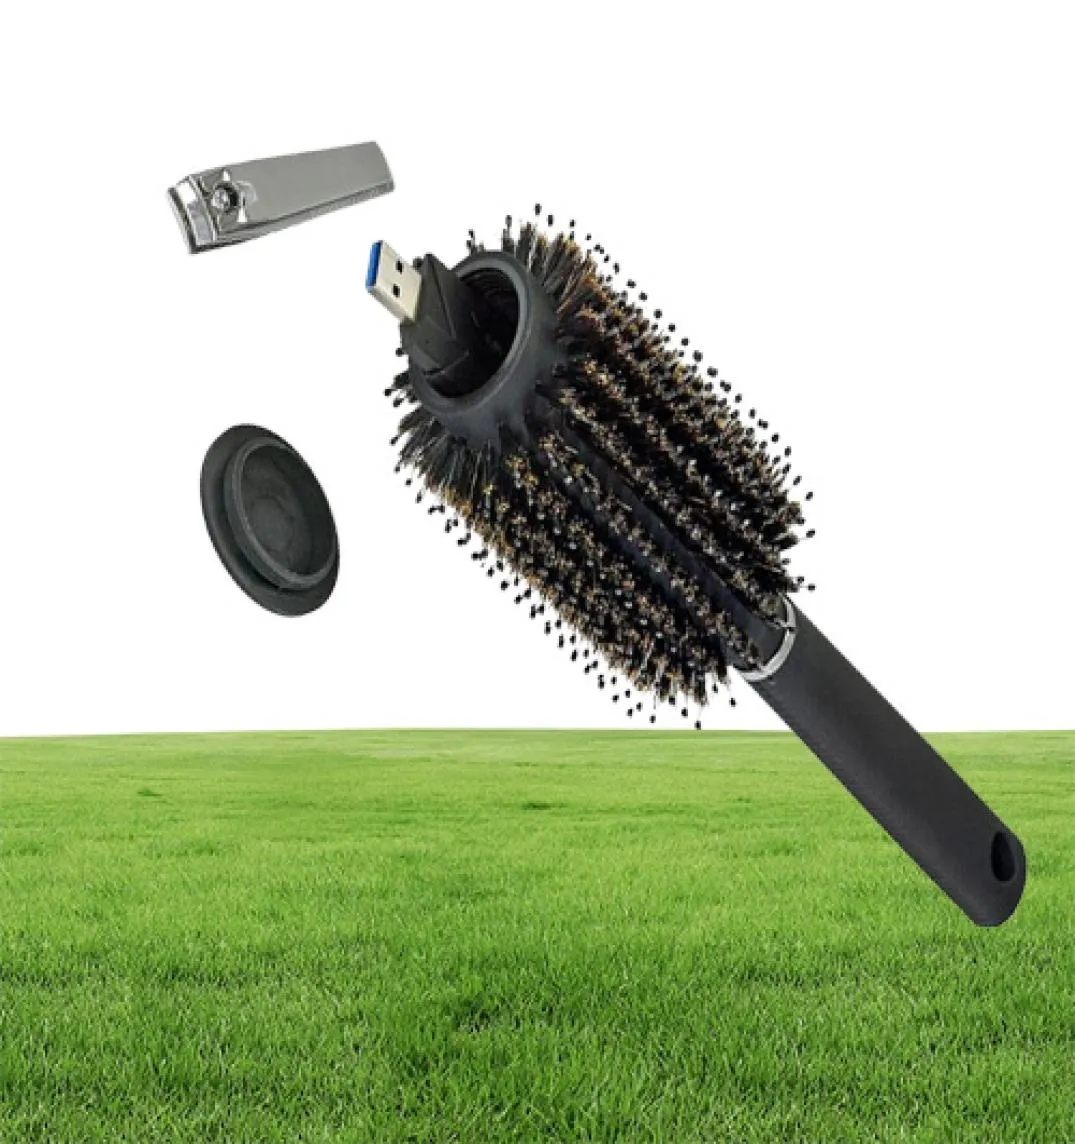 Hårborste svart stash säker avledning hemlig säkerhet hårborste dolda värdesaker ihålig behållare för hemsäkerhet hemlig lagring7103479